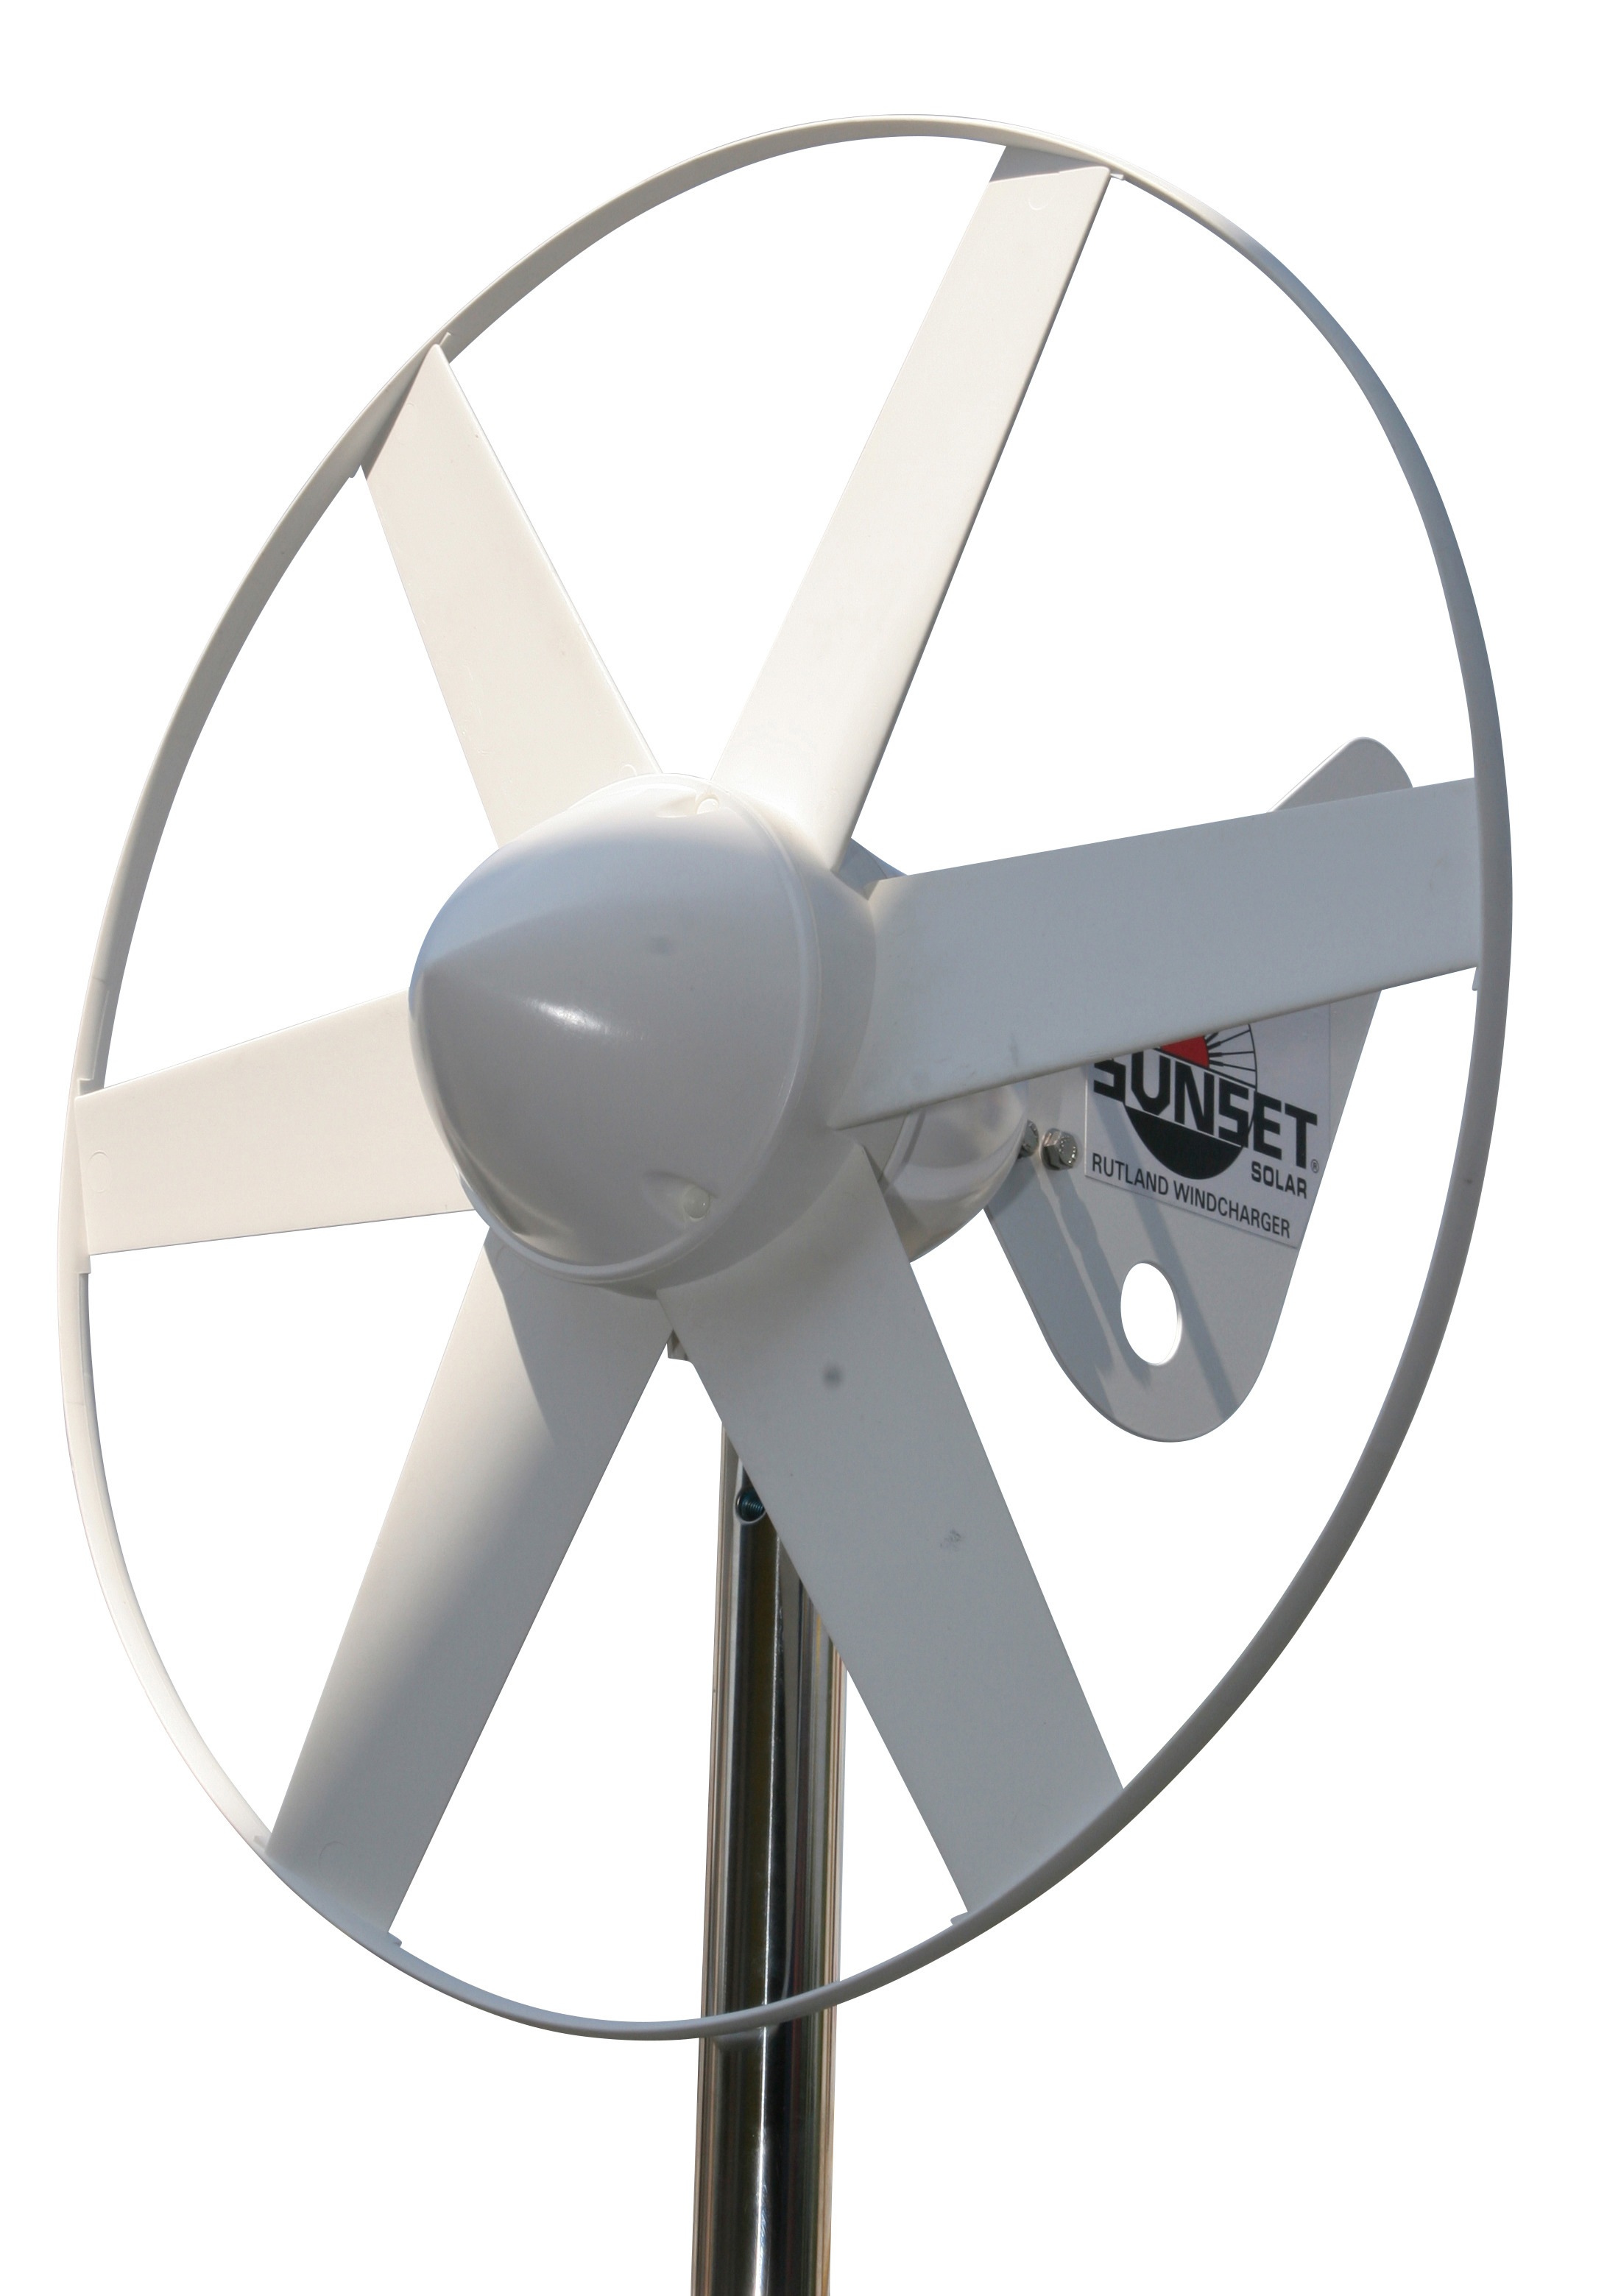 Sunset Windgenerator WG 914i, 12 V, 300 W, 100 W bei 10m/s, 12 V,  zuverlässige Stromlieferung auch bei Sturm